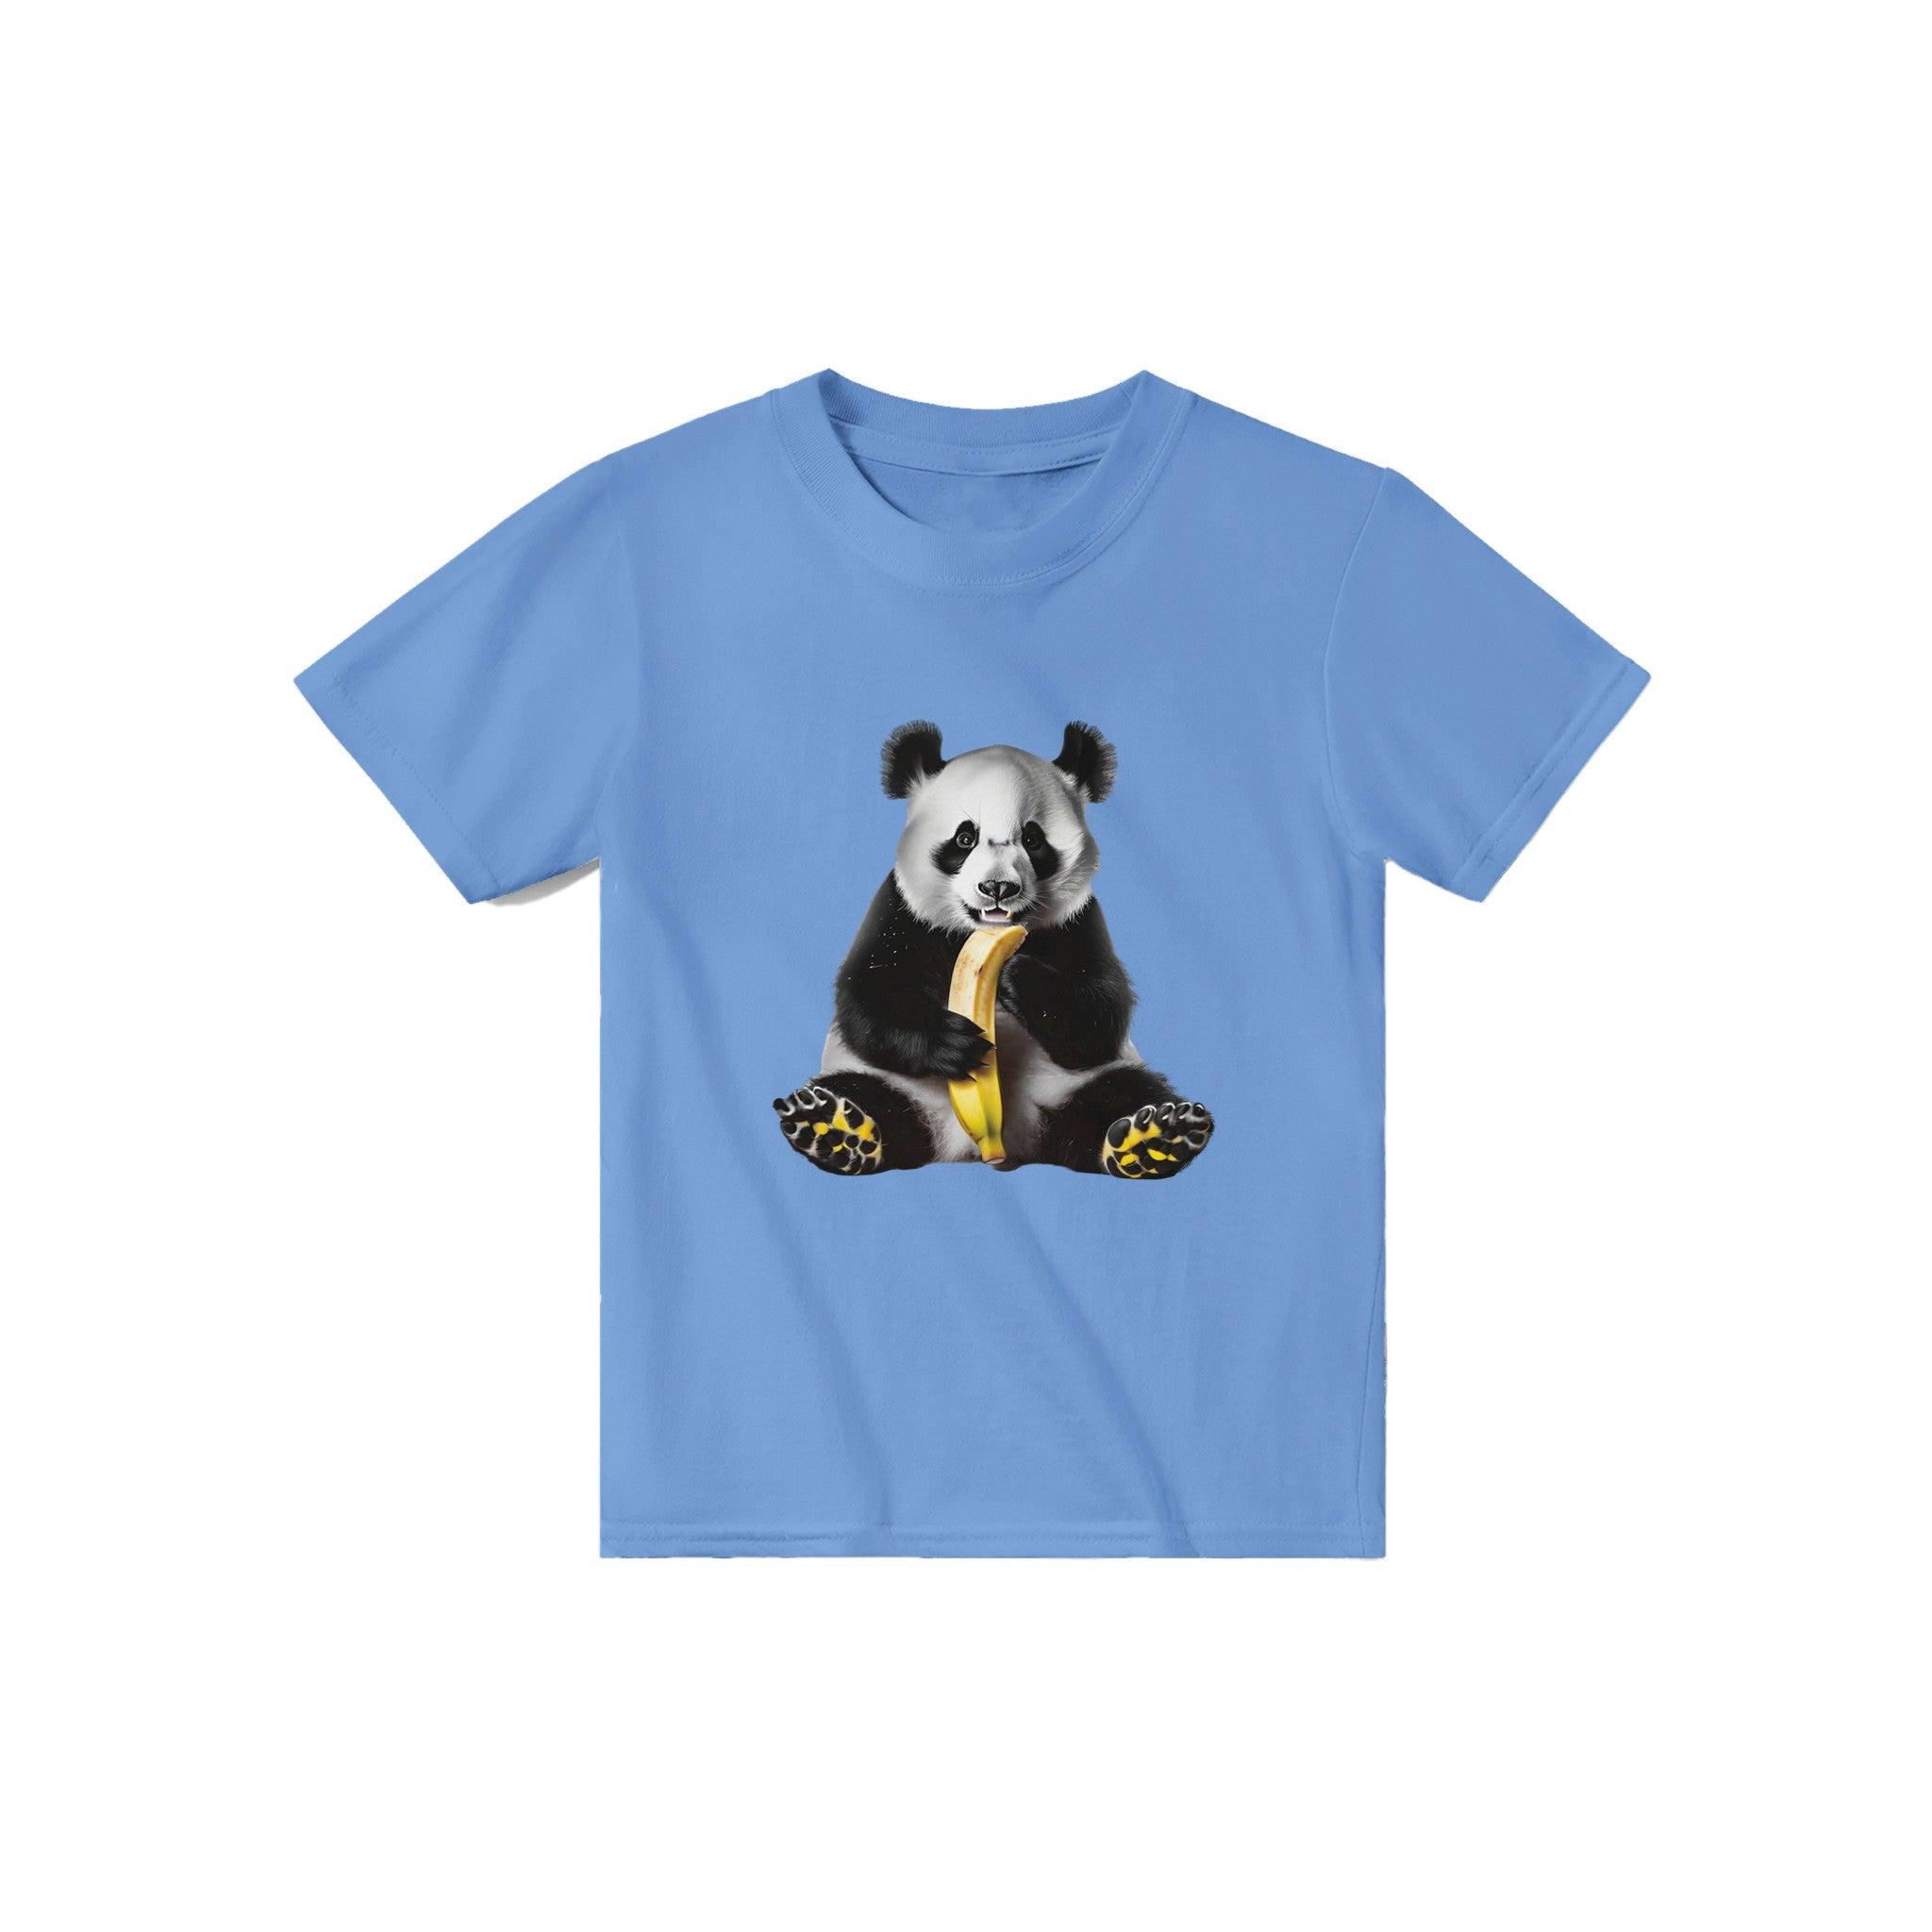 'Panda' Baby Tee - POMA